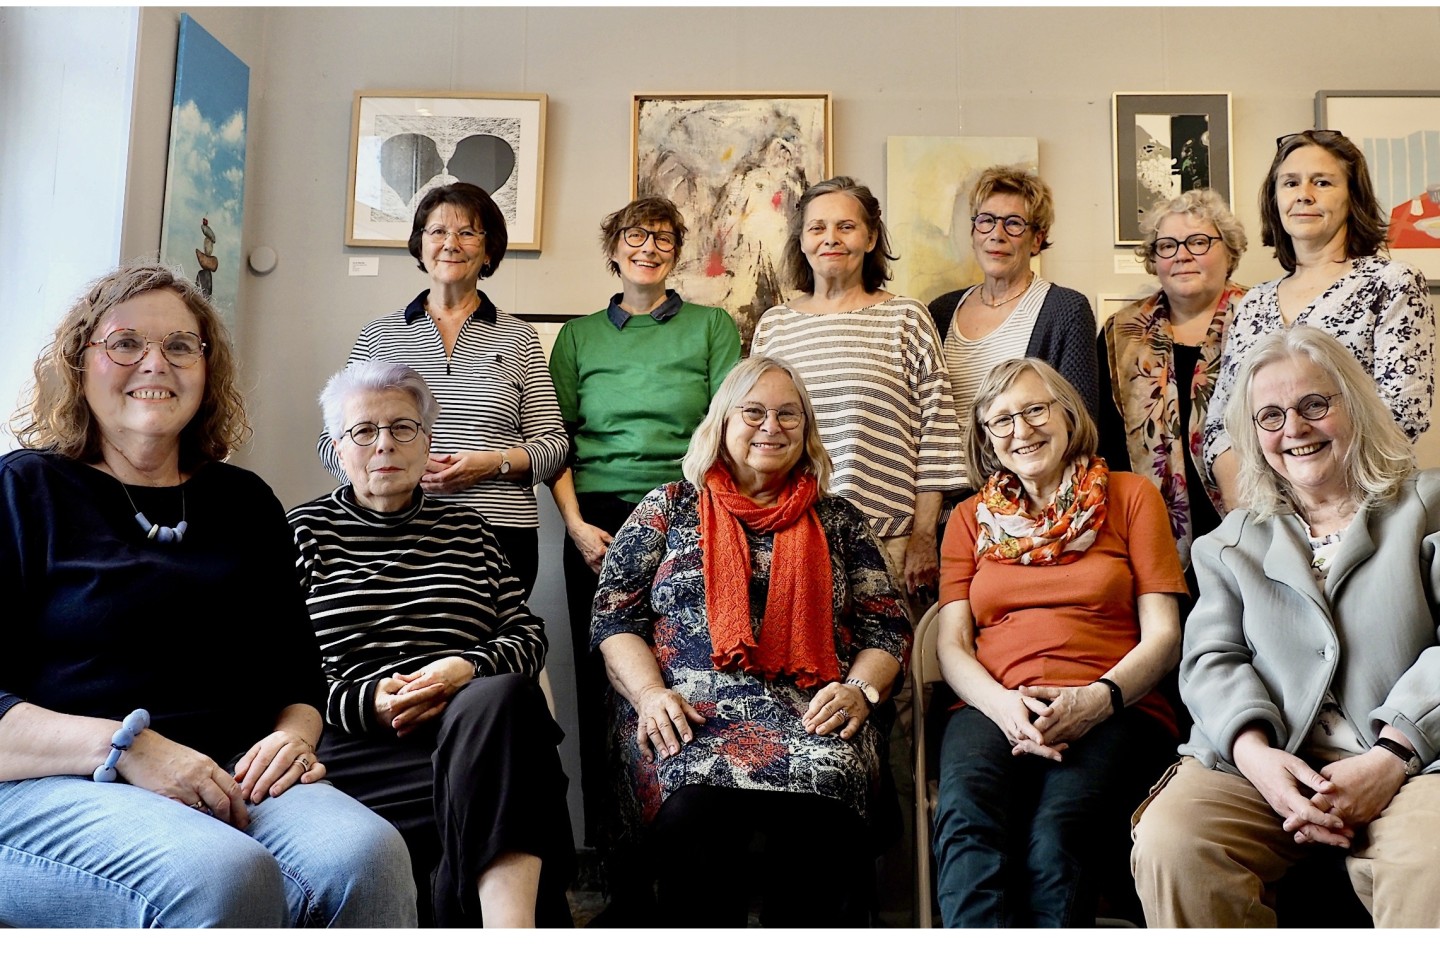 (unten, von links nach rechts) Uschi Bracker, Viola Richter-Jürgens, Karin Fischer „Nirak“, Marlies Jung, Christine Halm. Oben, von links nach rechts: Anne Mittag, Barbara Schneider, Leonore Francken